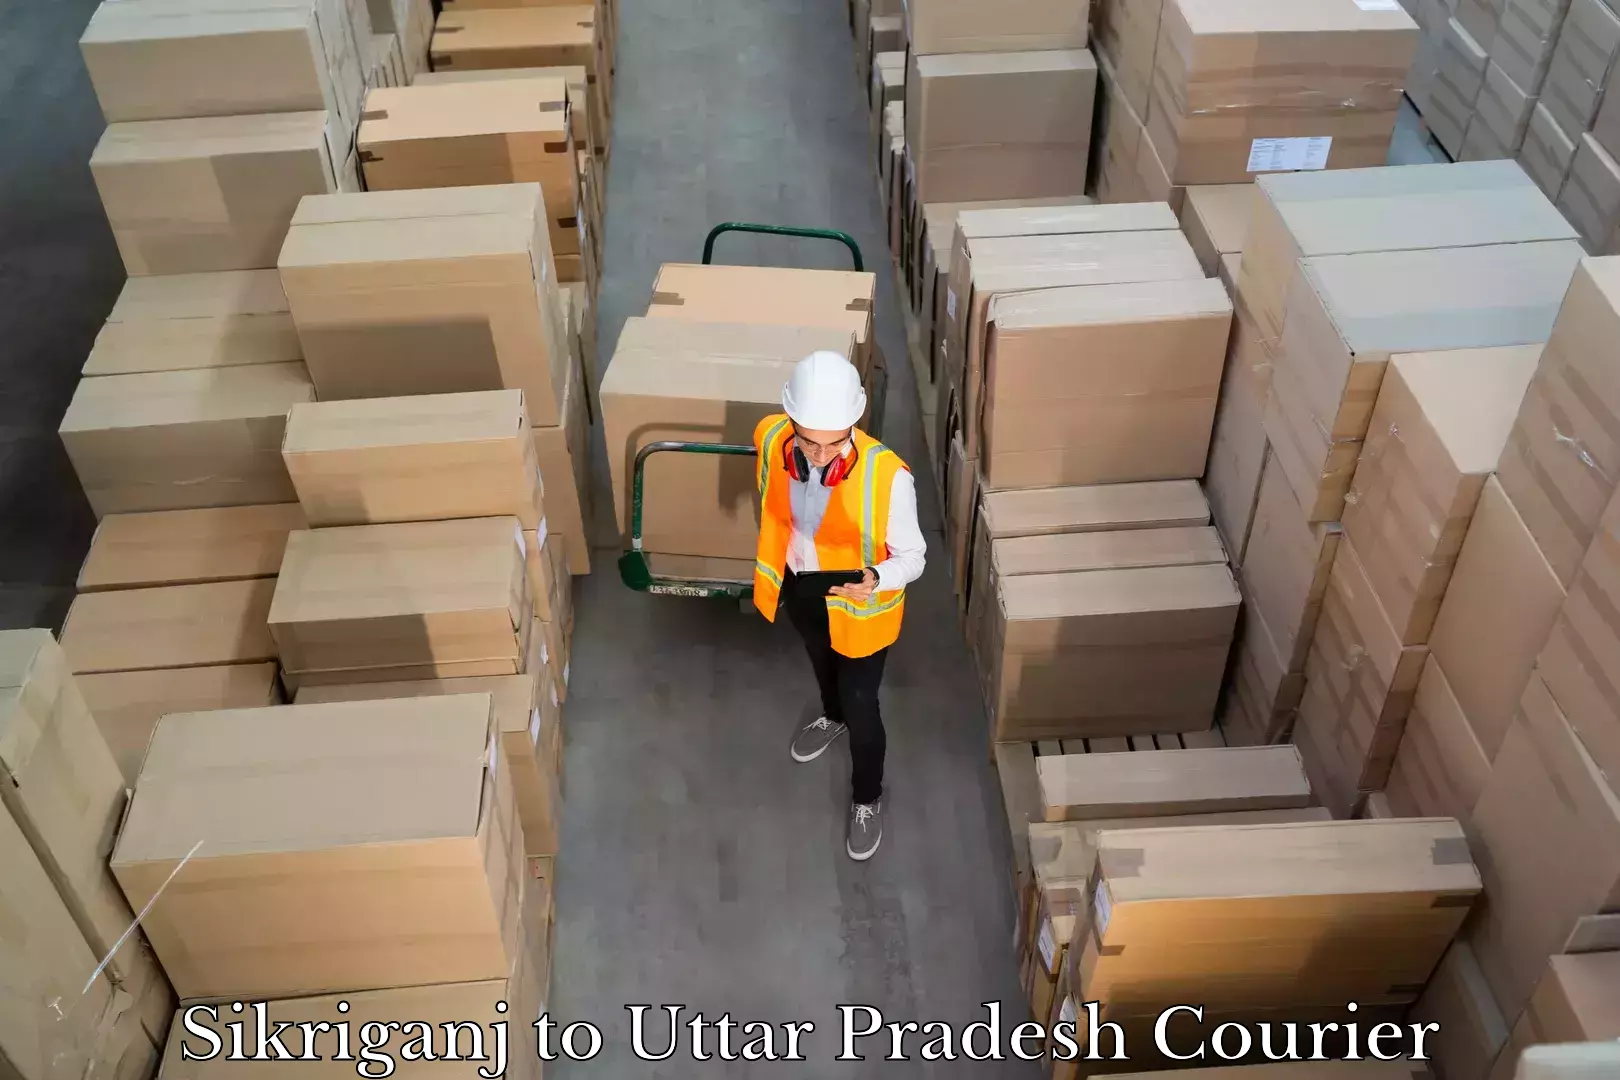 Luggage shipment processing Sikriganj to Ganj Dundwara